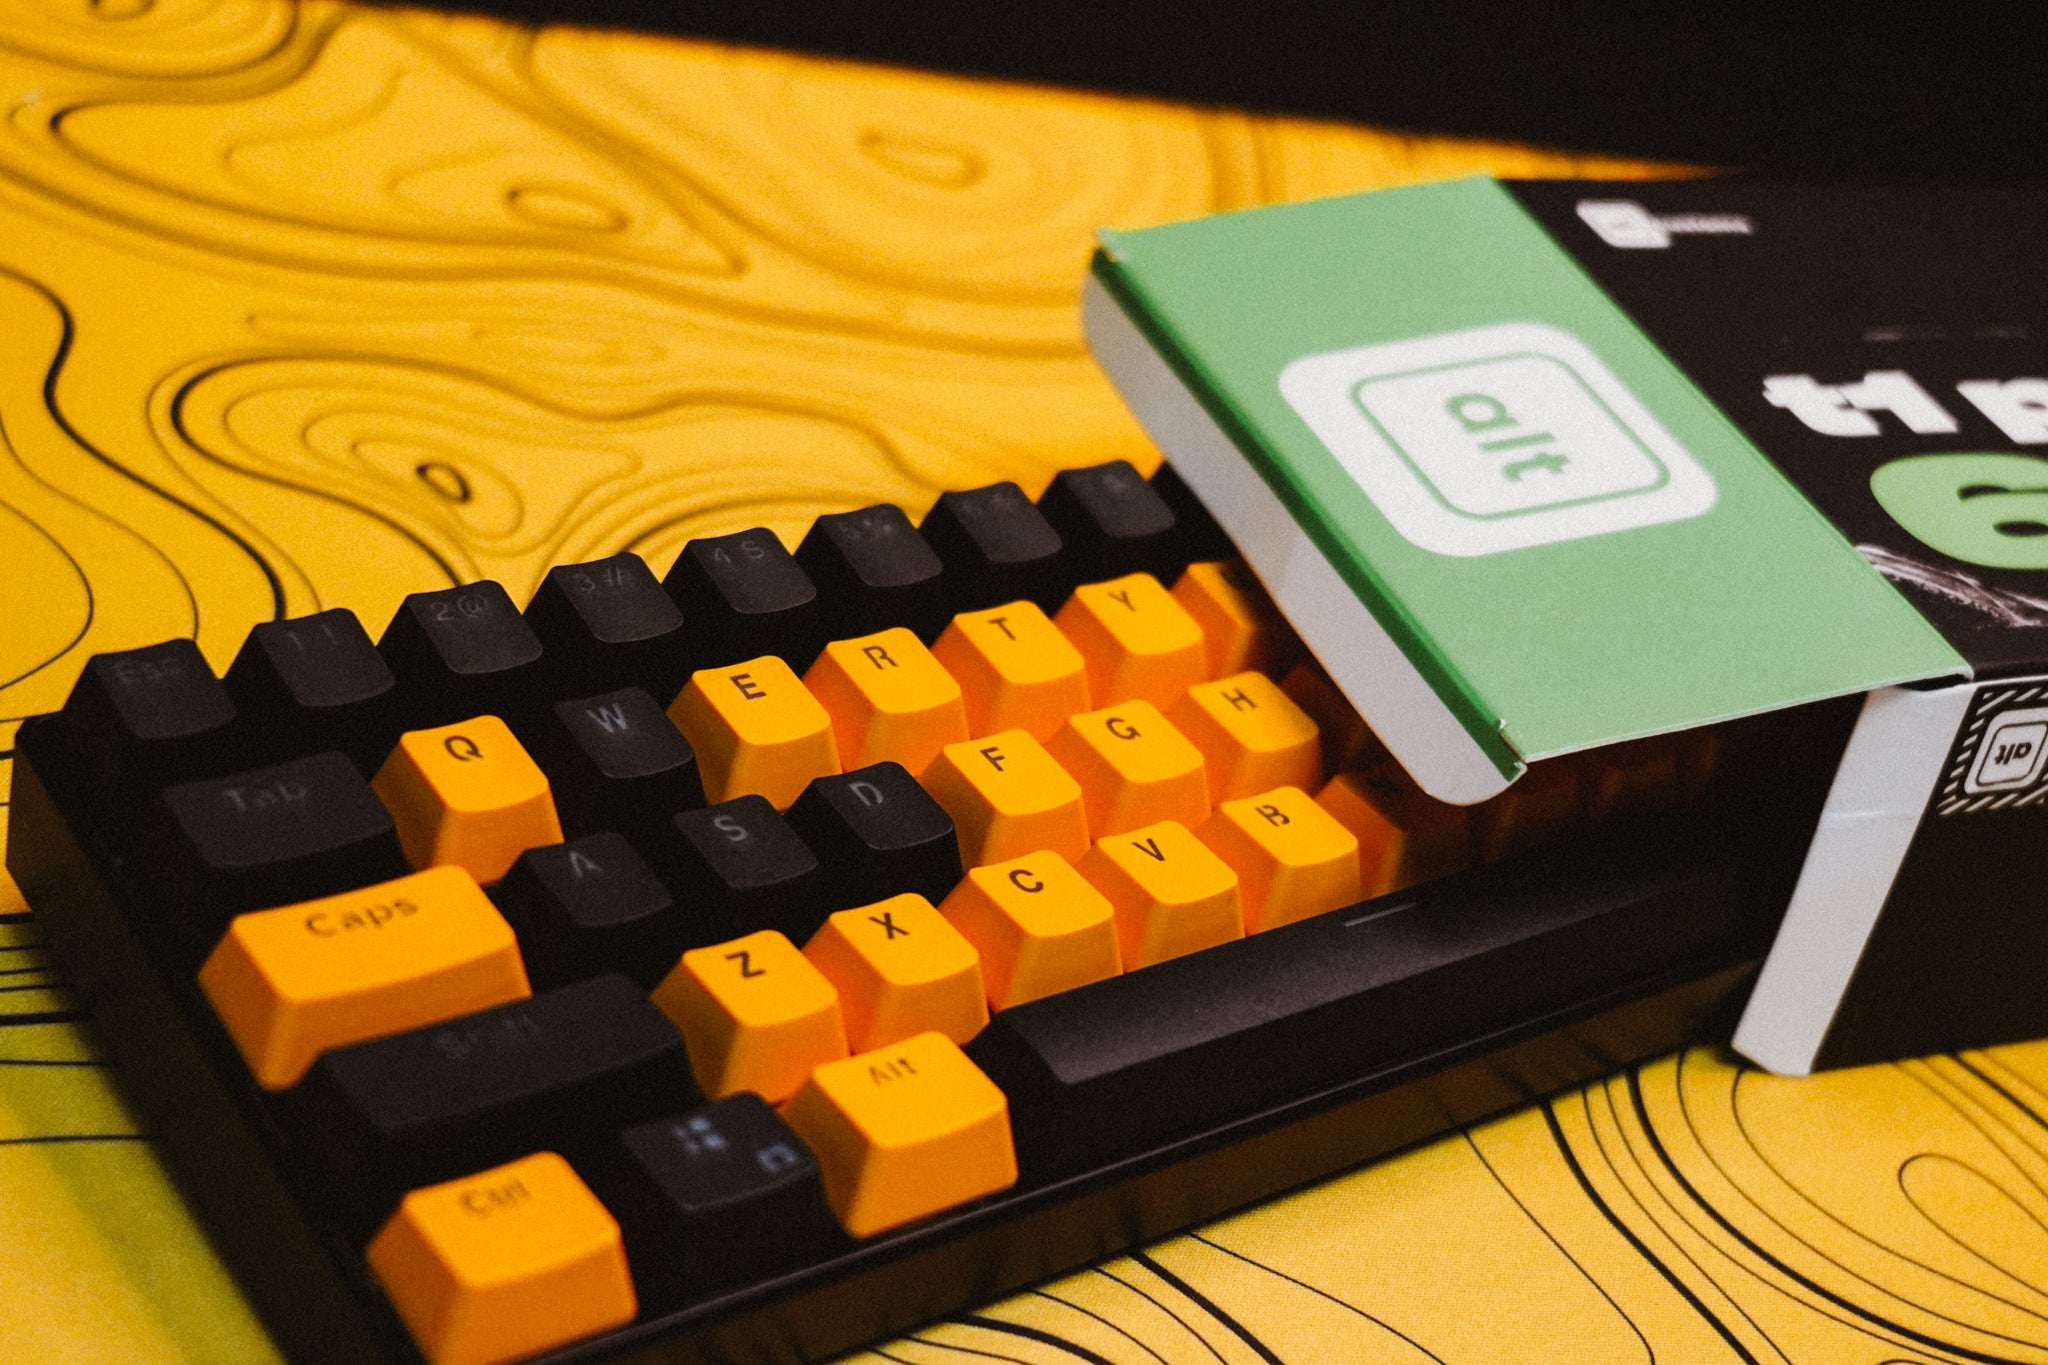 bumblebee - Gaming Keyboards